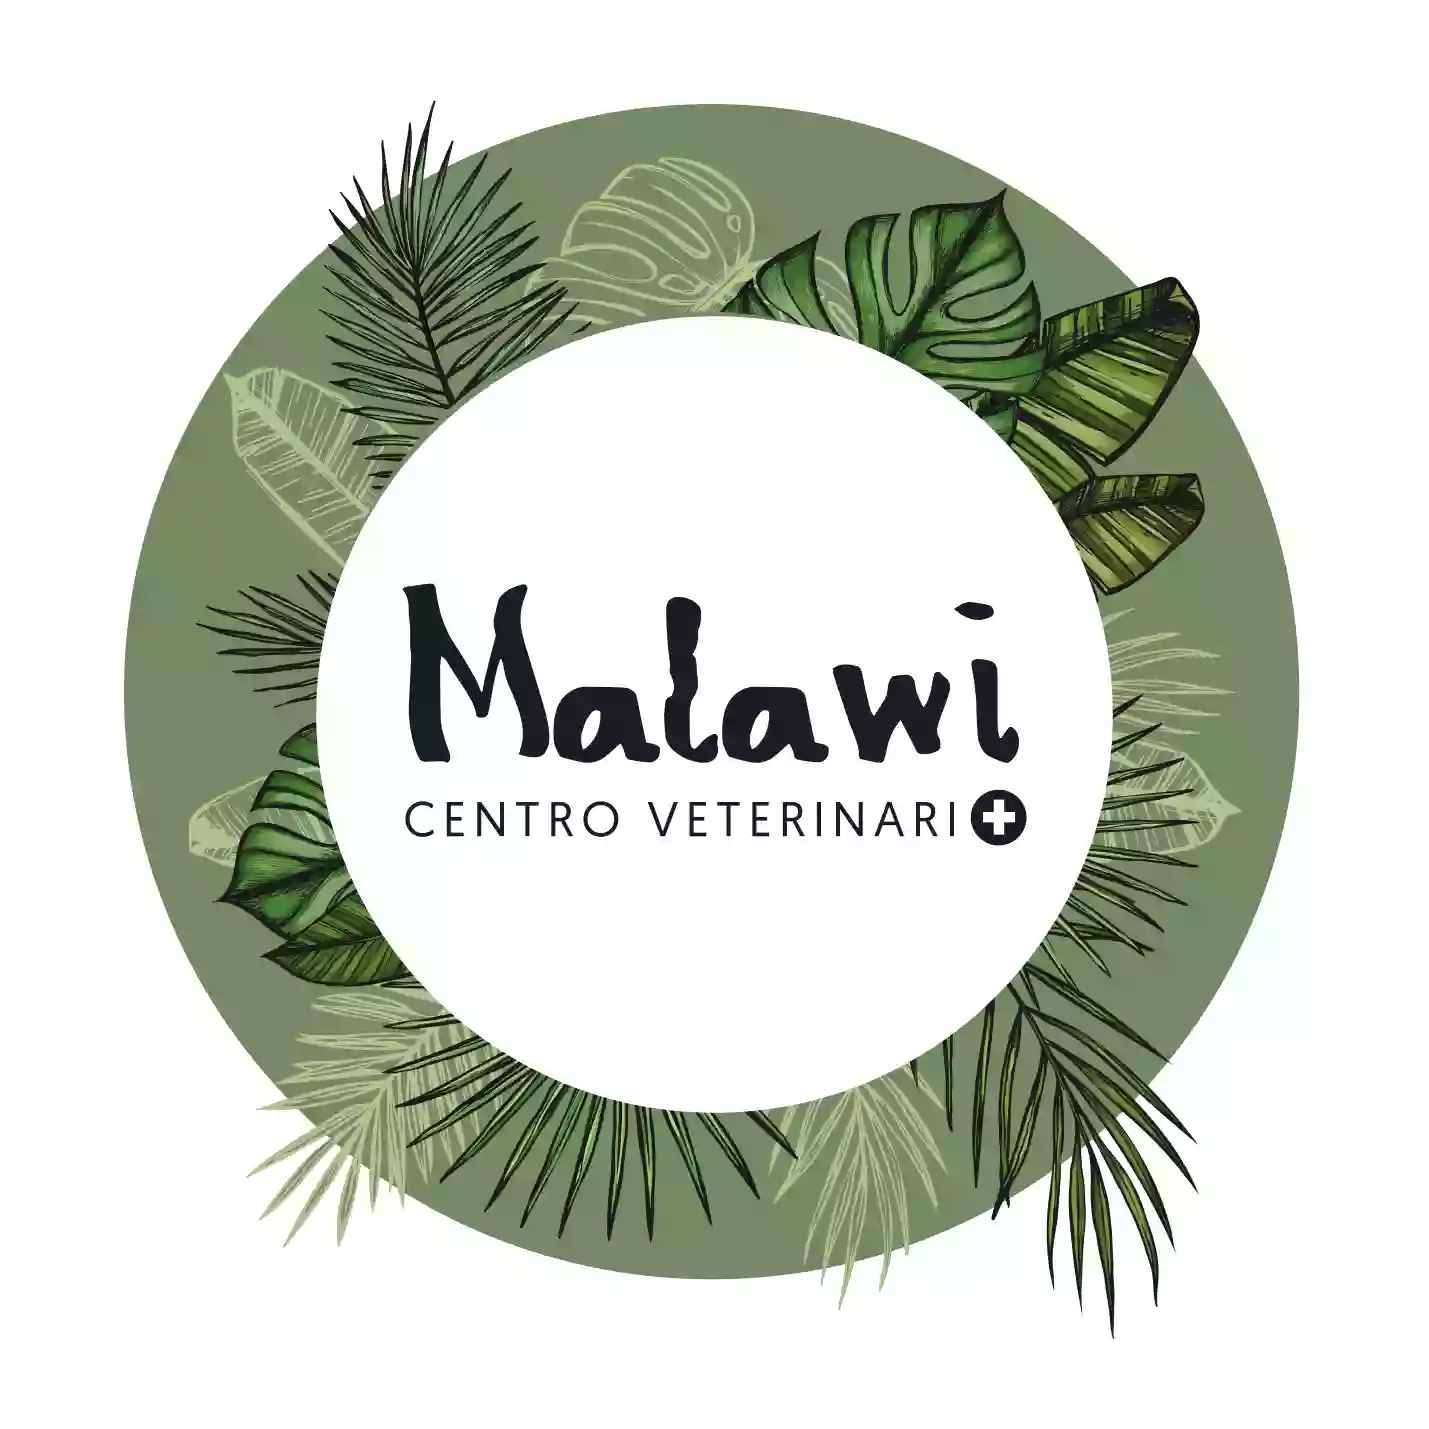 Centro Veterinario Malawi